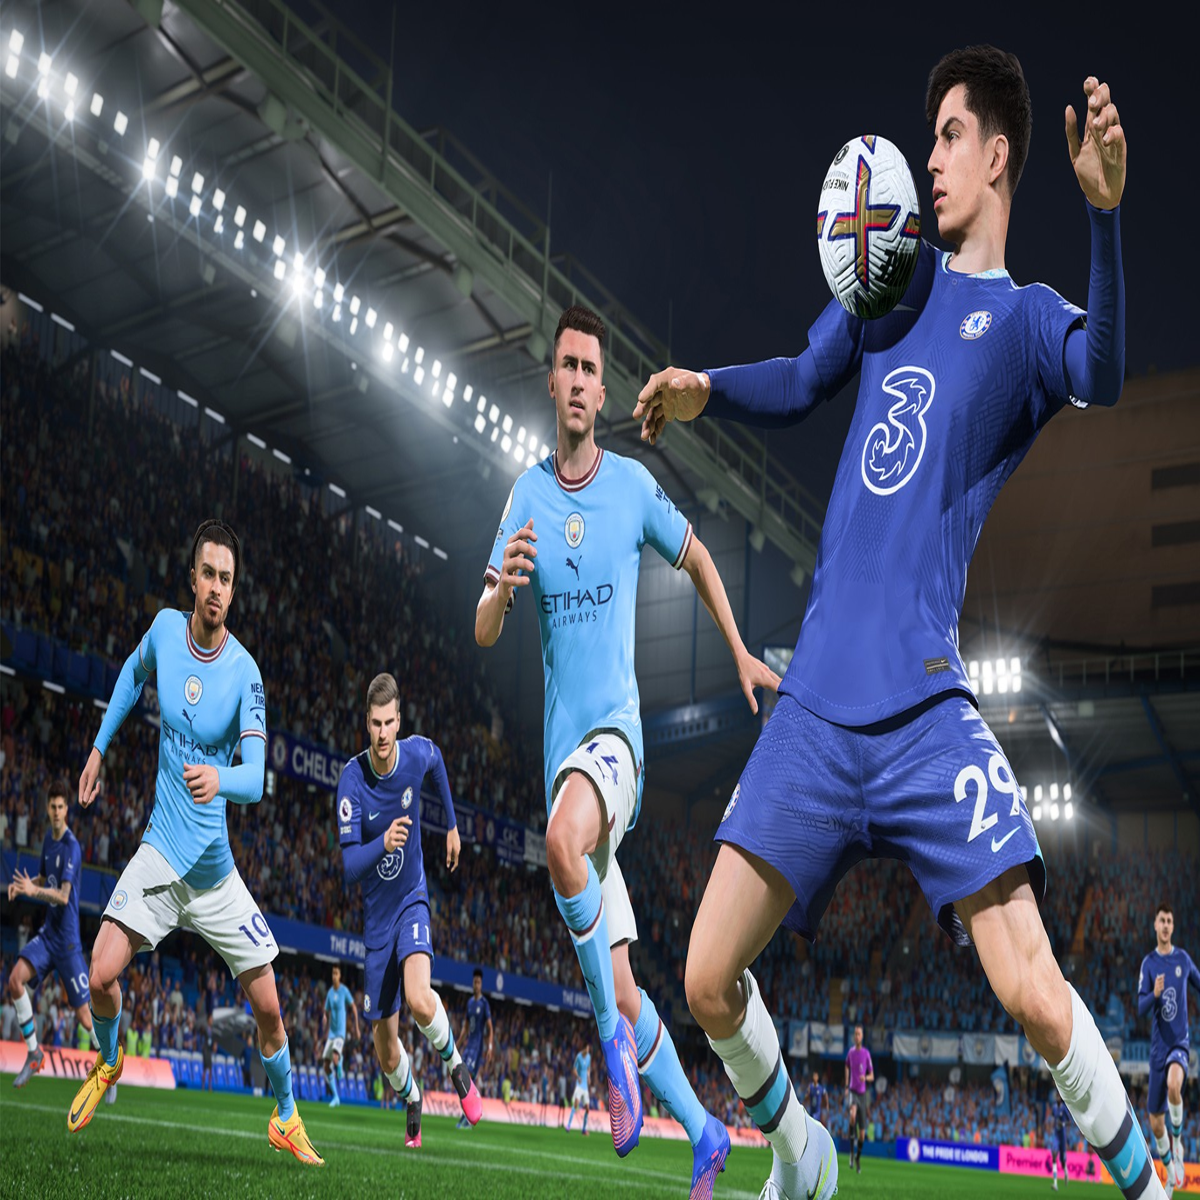 EA Sports FC 24 Top 100 Rating Predictions!